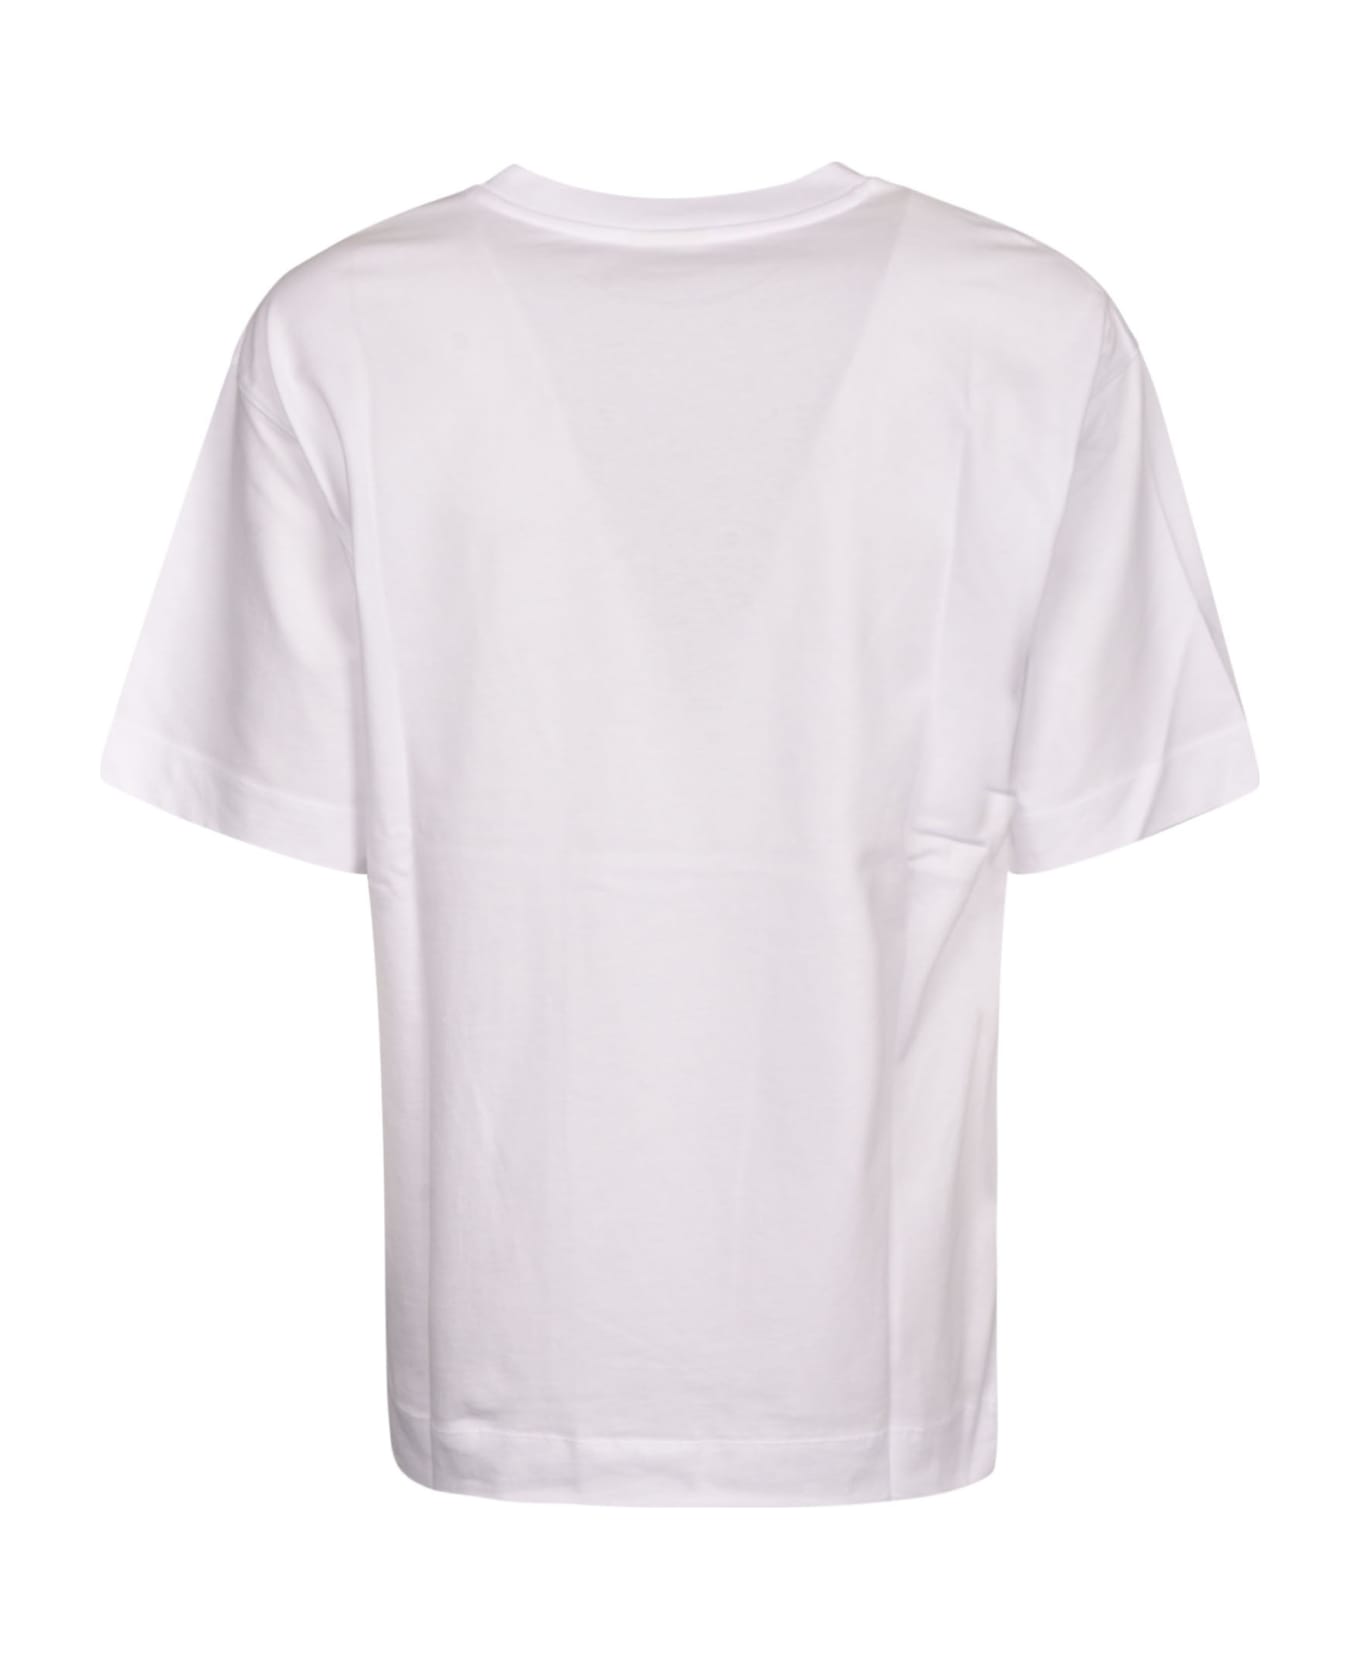 Dries Van Noten Dream Baby Dream T-shirt - White シャツ